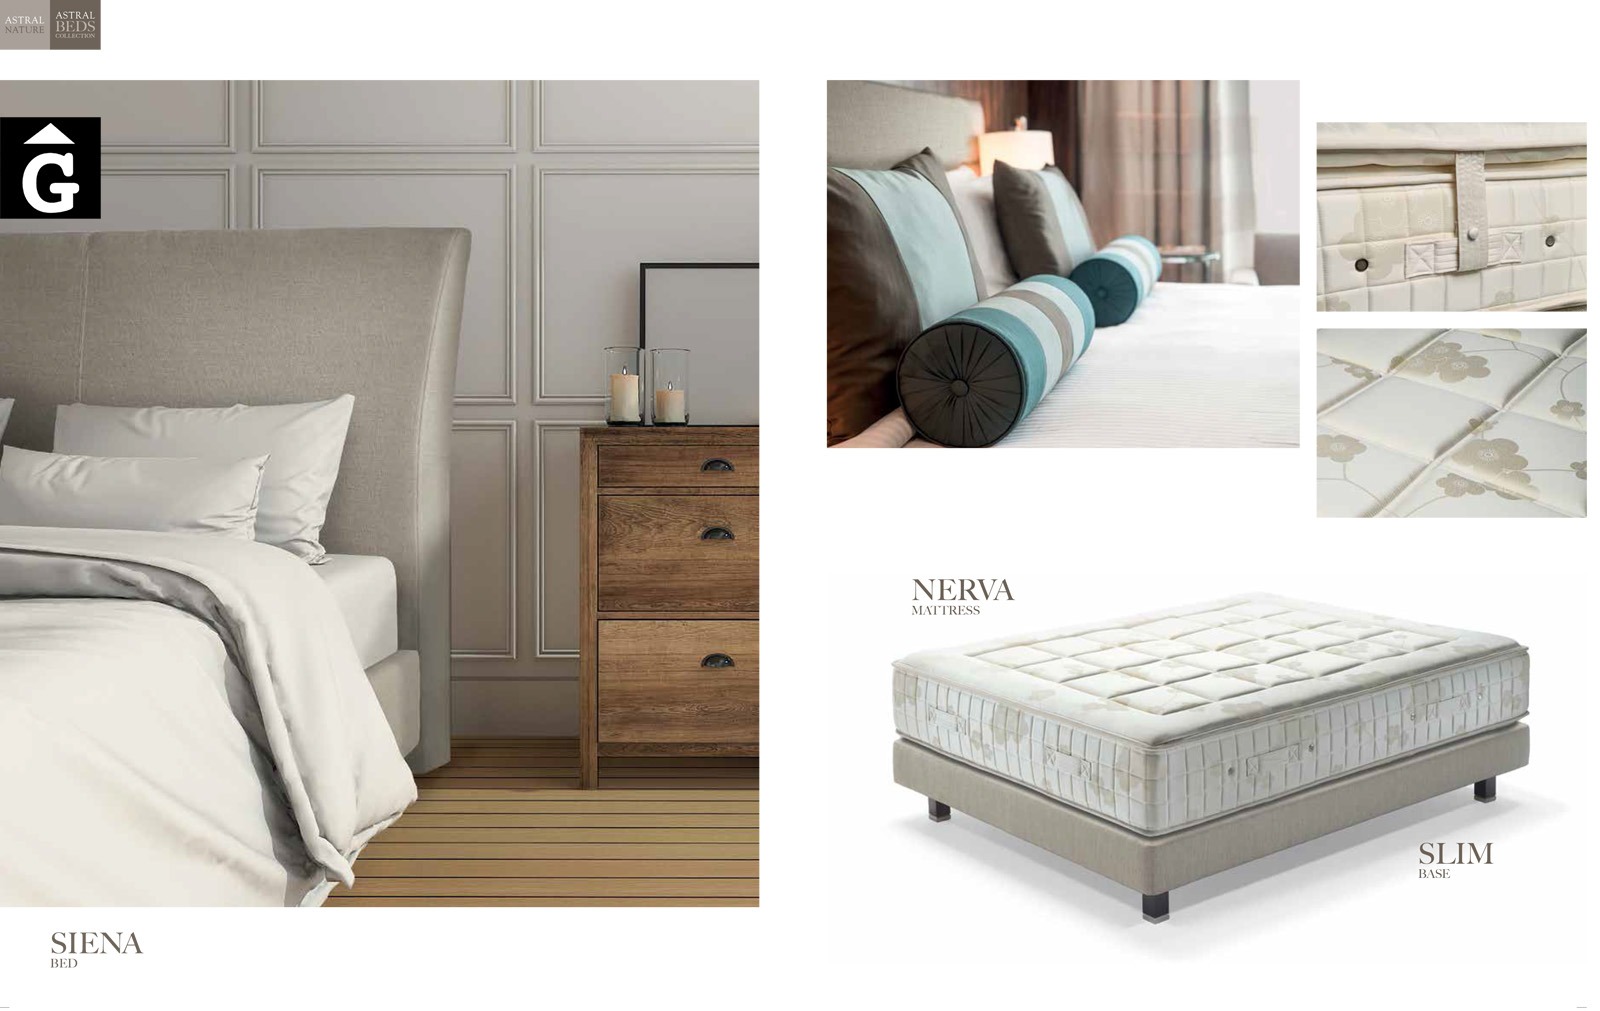 Siena llit entapissat detalls Beds Astral Nature descans qualitat natural i salut junts per mobles Gifreu